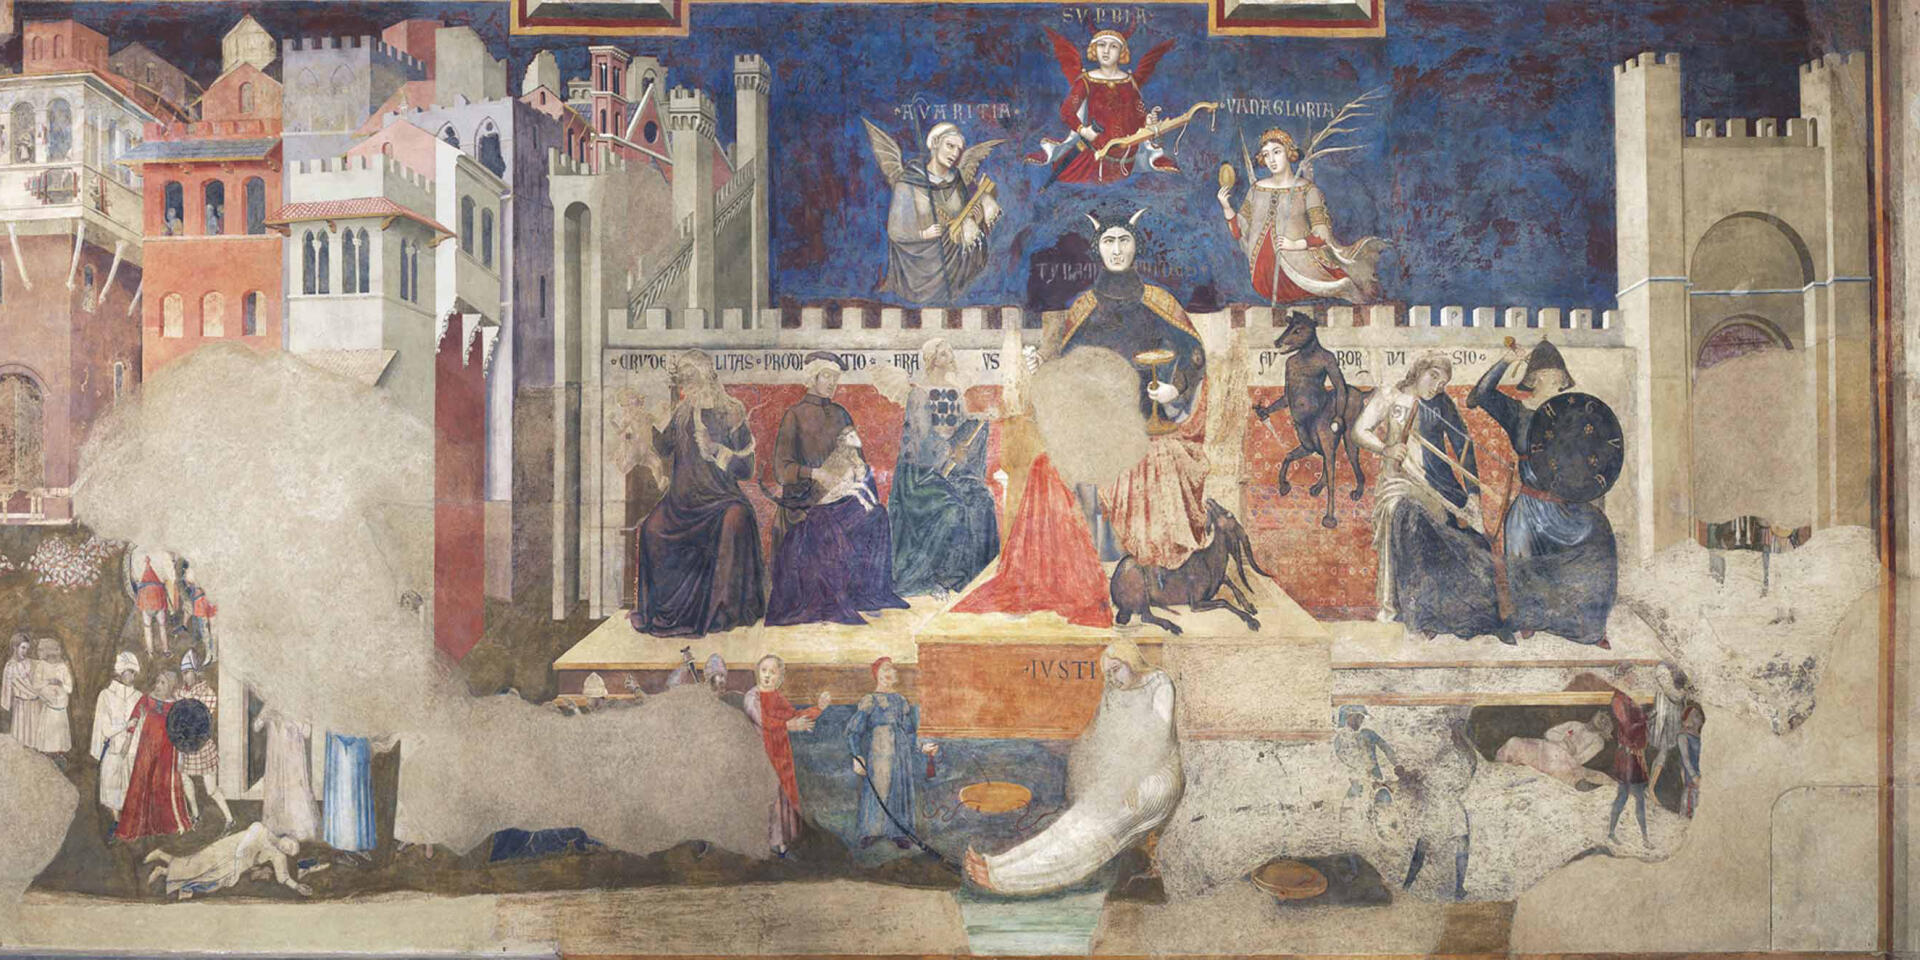 L’affresco di Lorenzetti, questa immagine politica del XIV secolo che ci allerta sulla crisi della nostra Repubblica